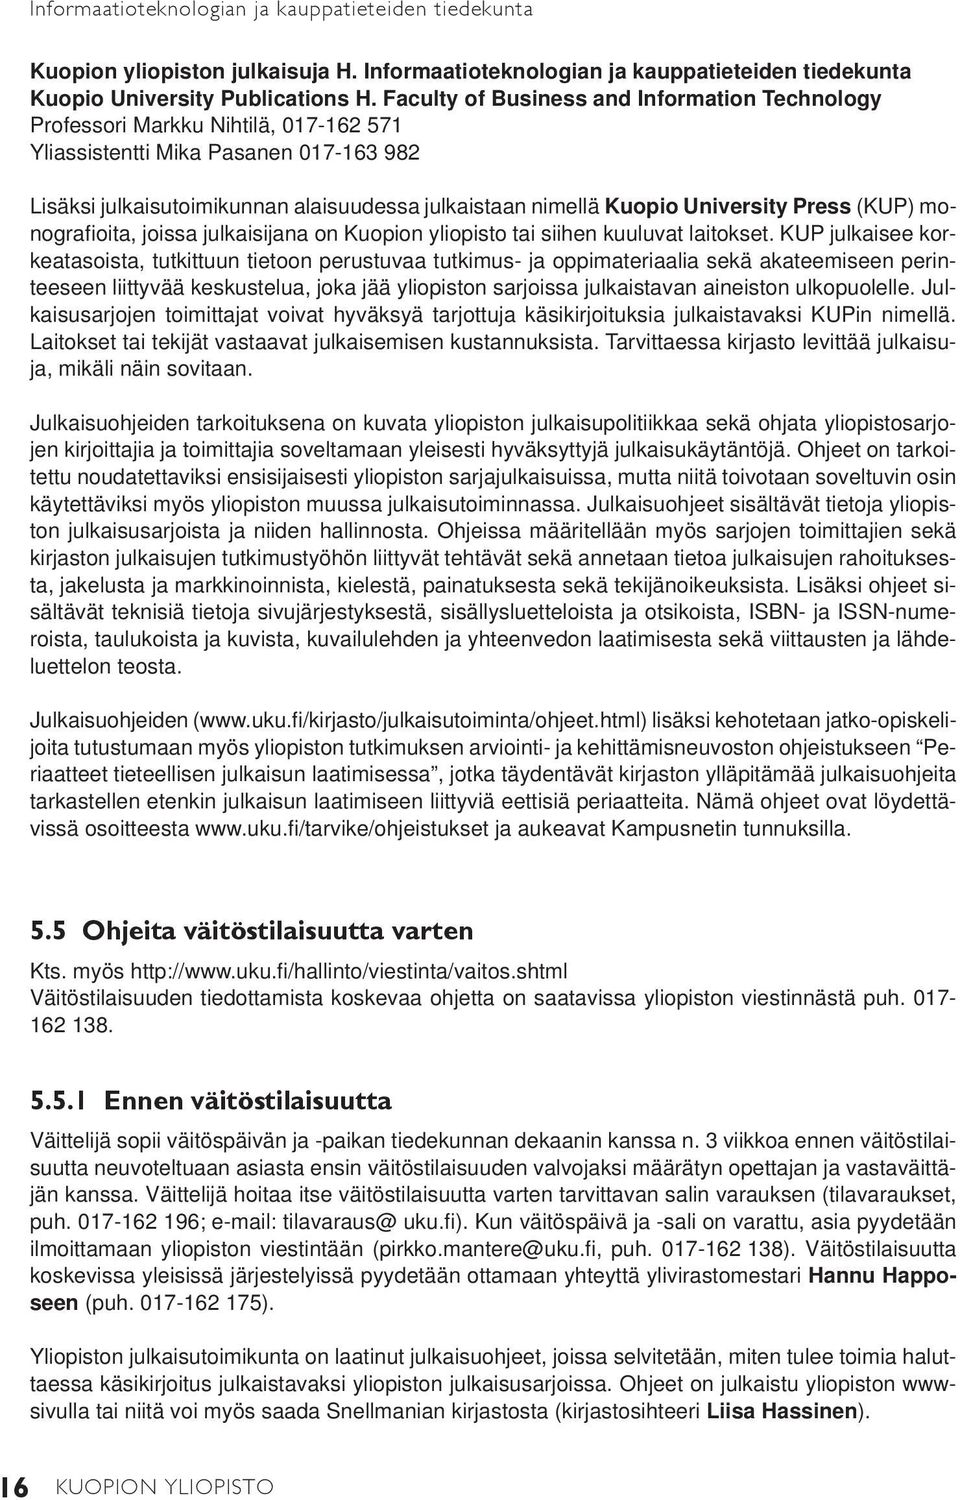 University Press (KUP) monografi oita, joissa julkaisijana on Kuopion yliopisto tai siihen kuuluvat laitokset.